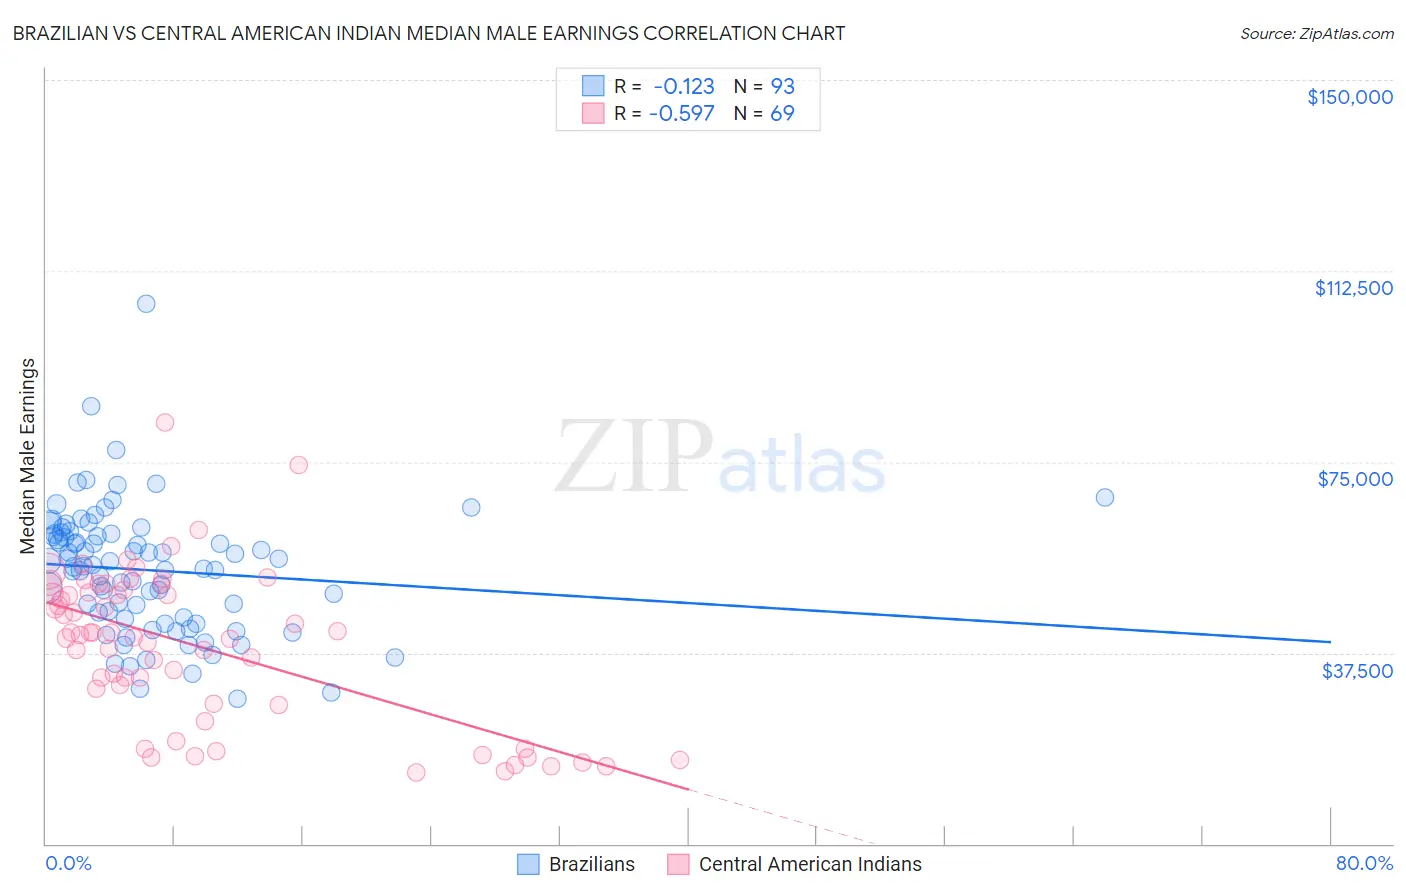 Brazilian vs Central American Indian Median Male Earnings